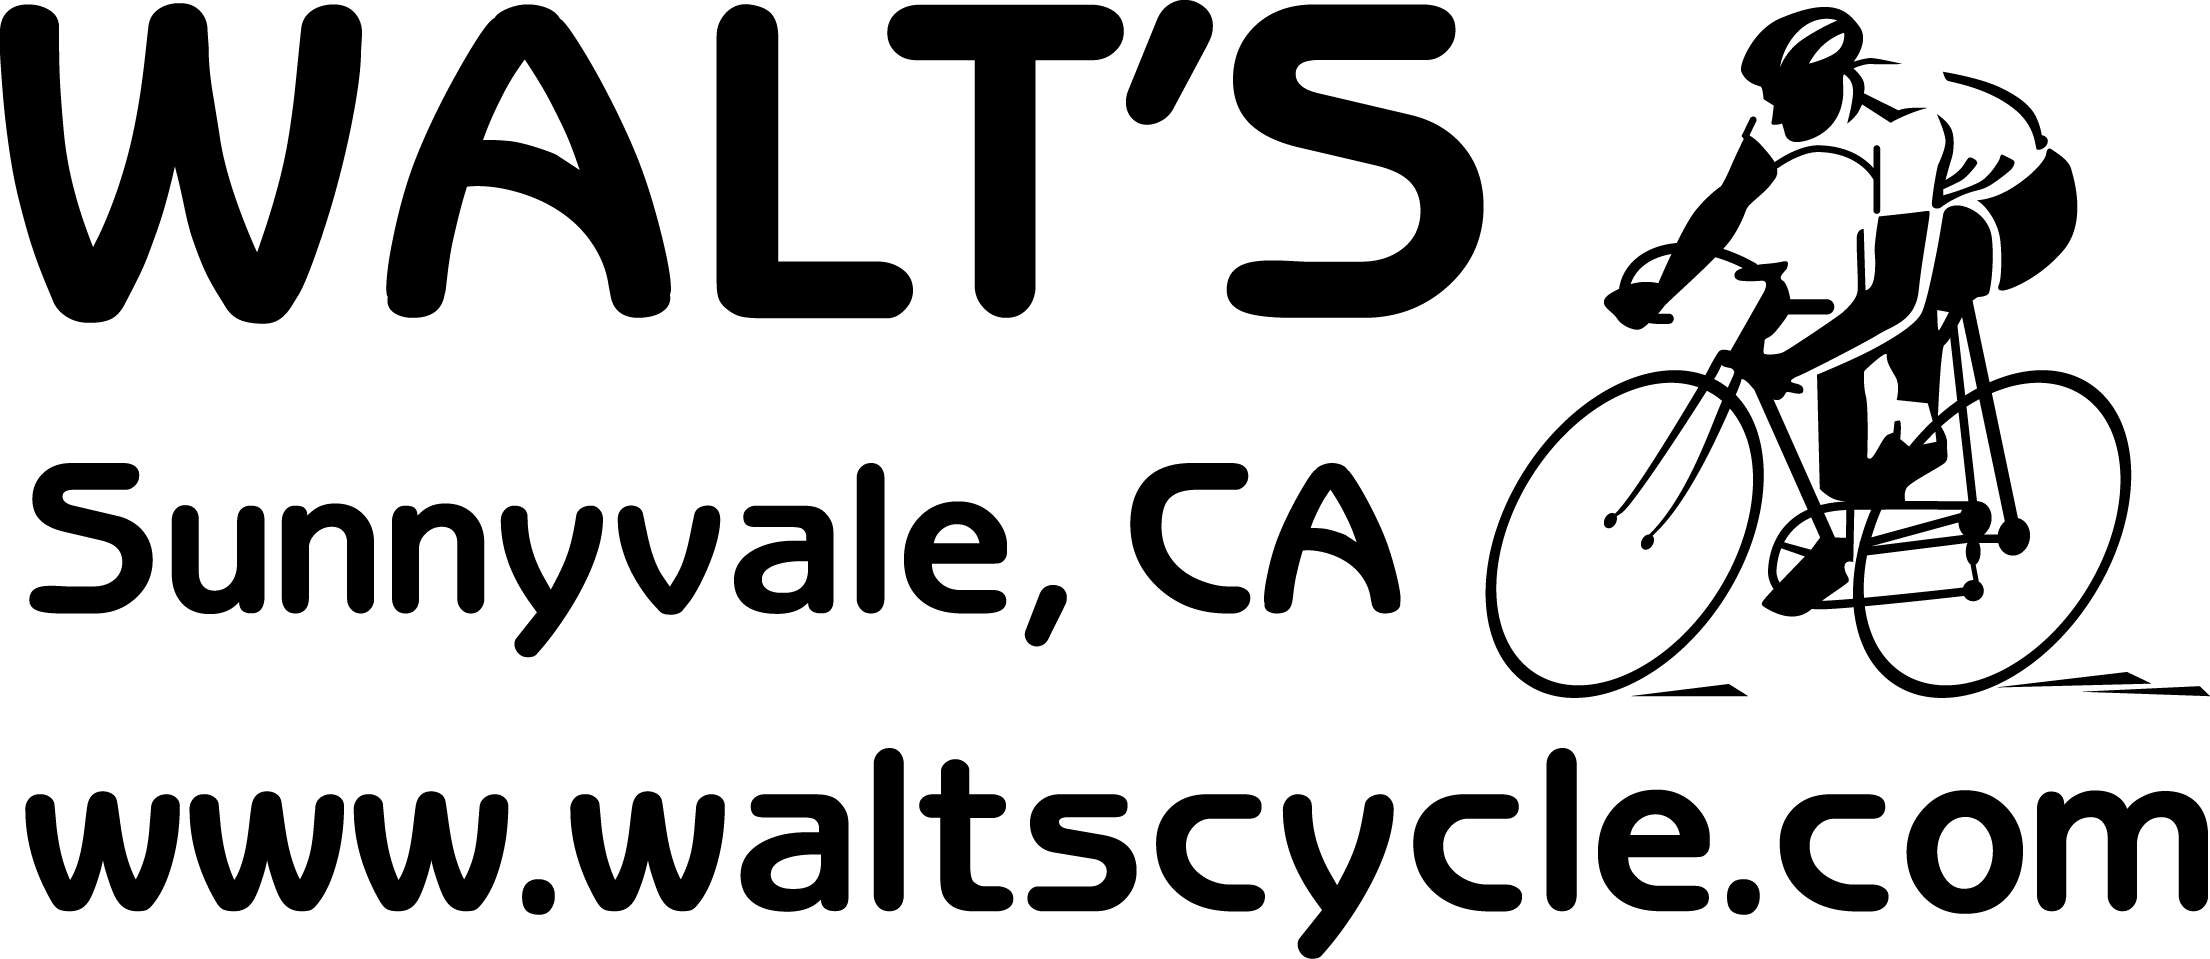 इतिहास का हिस्सा बन चुकी Atlas साइकिल की फैक्ट्री फिर हो सकती है शुरू! आई  ये बड़ी खबर – News18 हिंदी